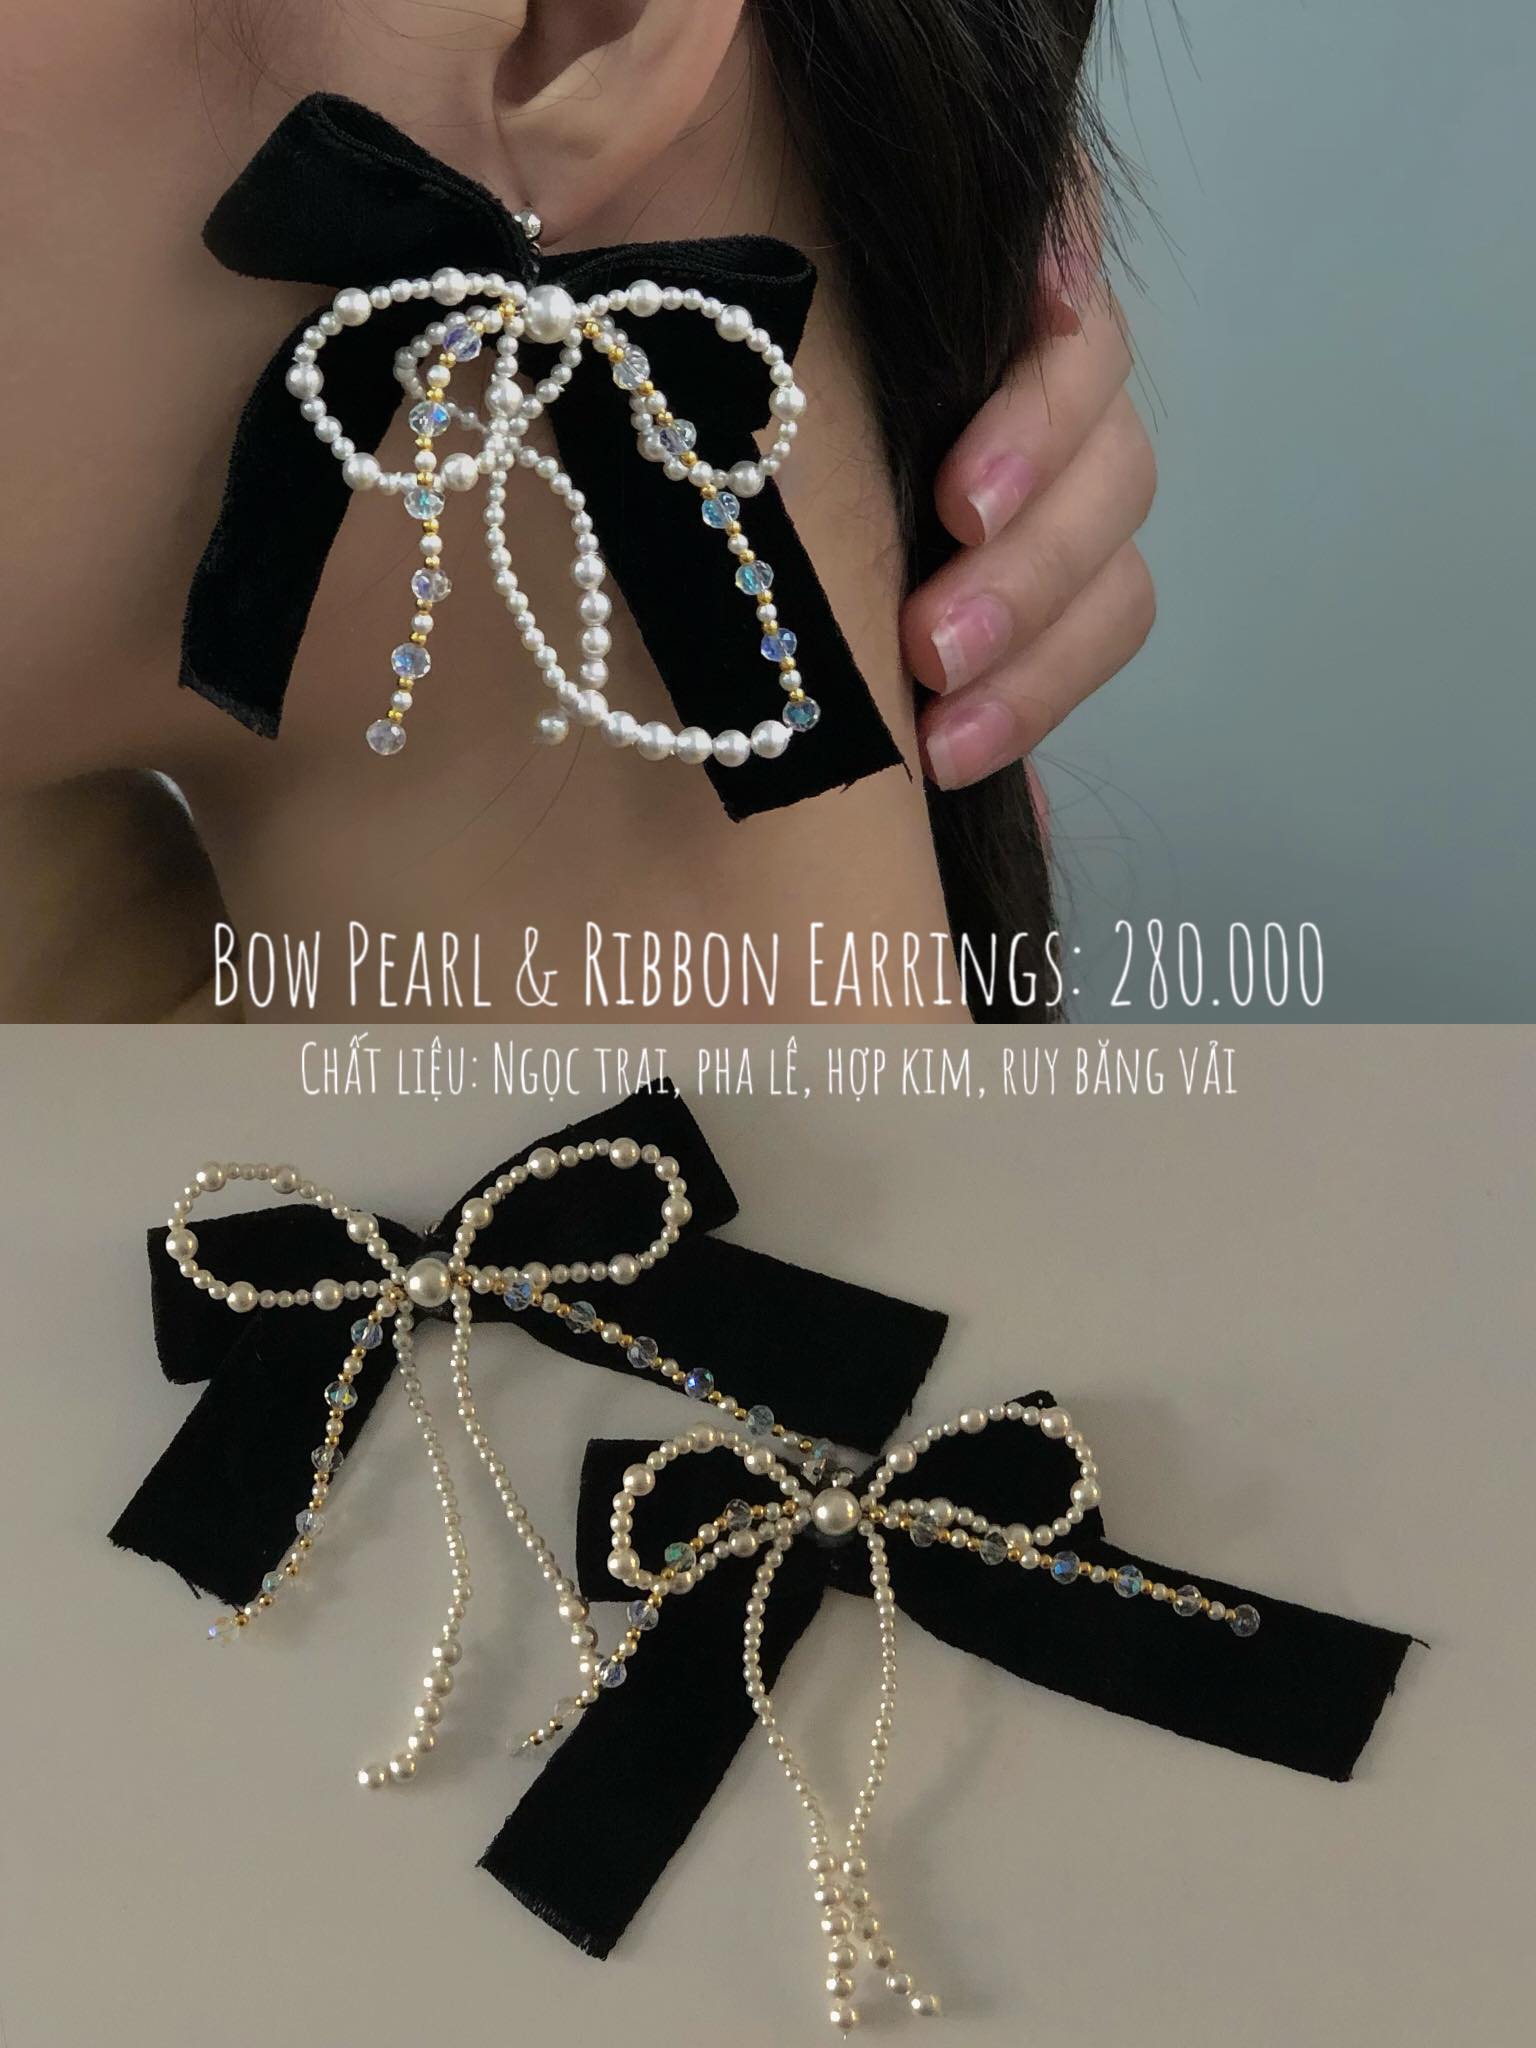 Bow Pearl & Ribbon Earrings